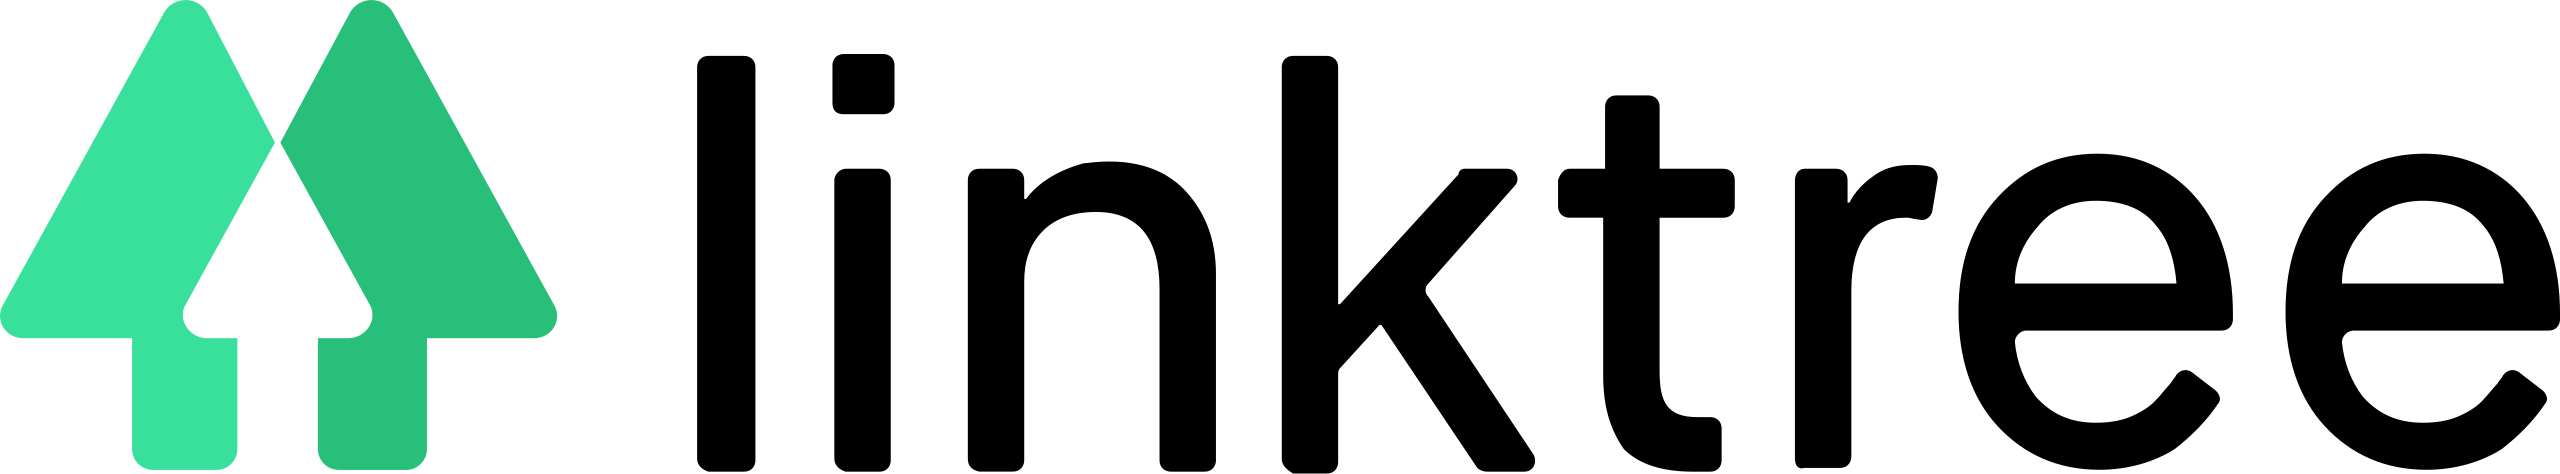 logo: linktree